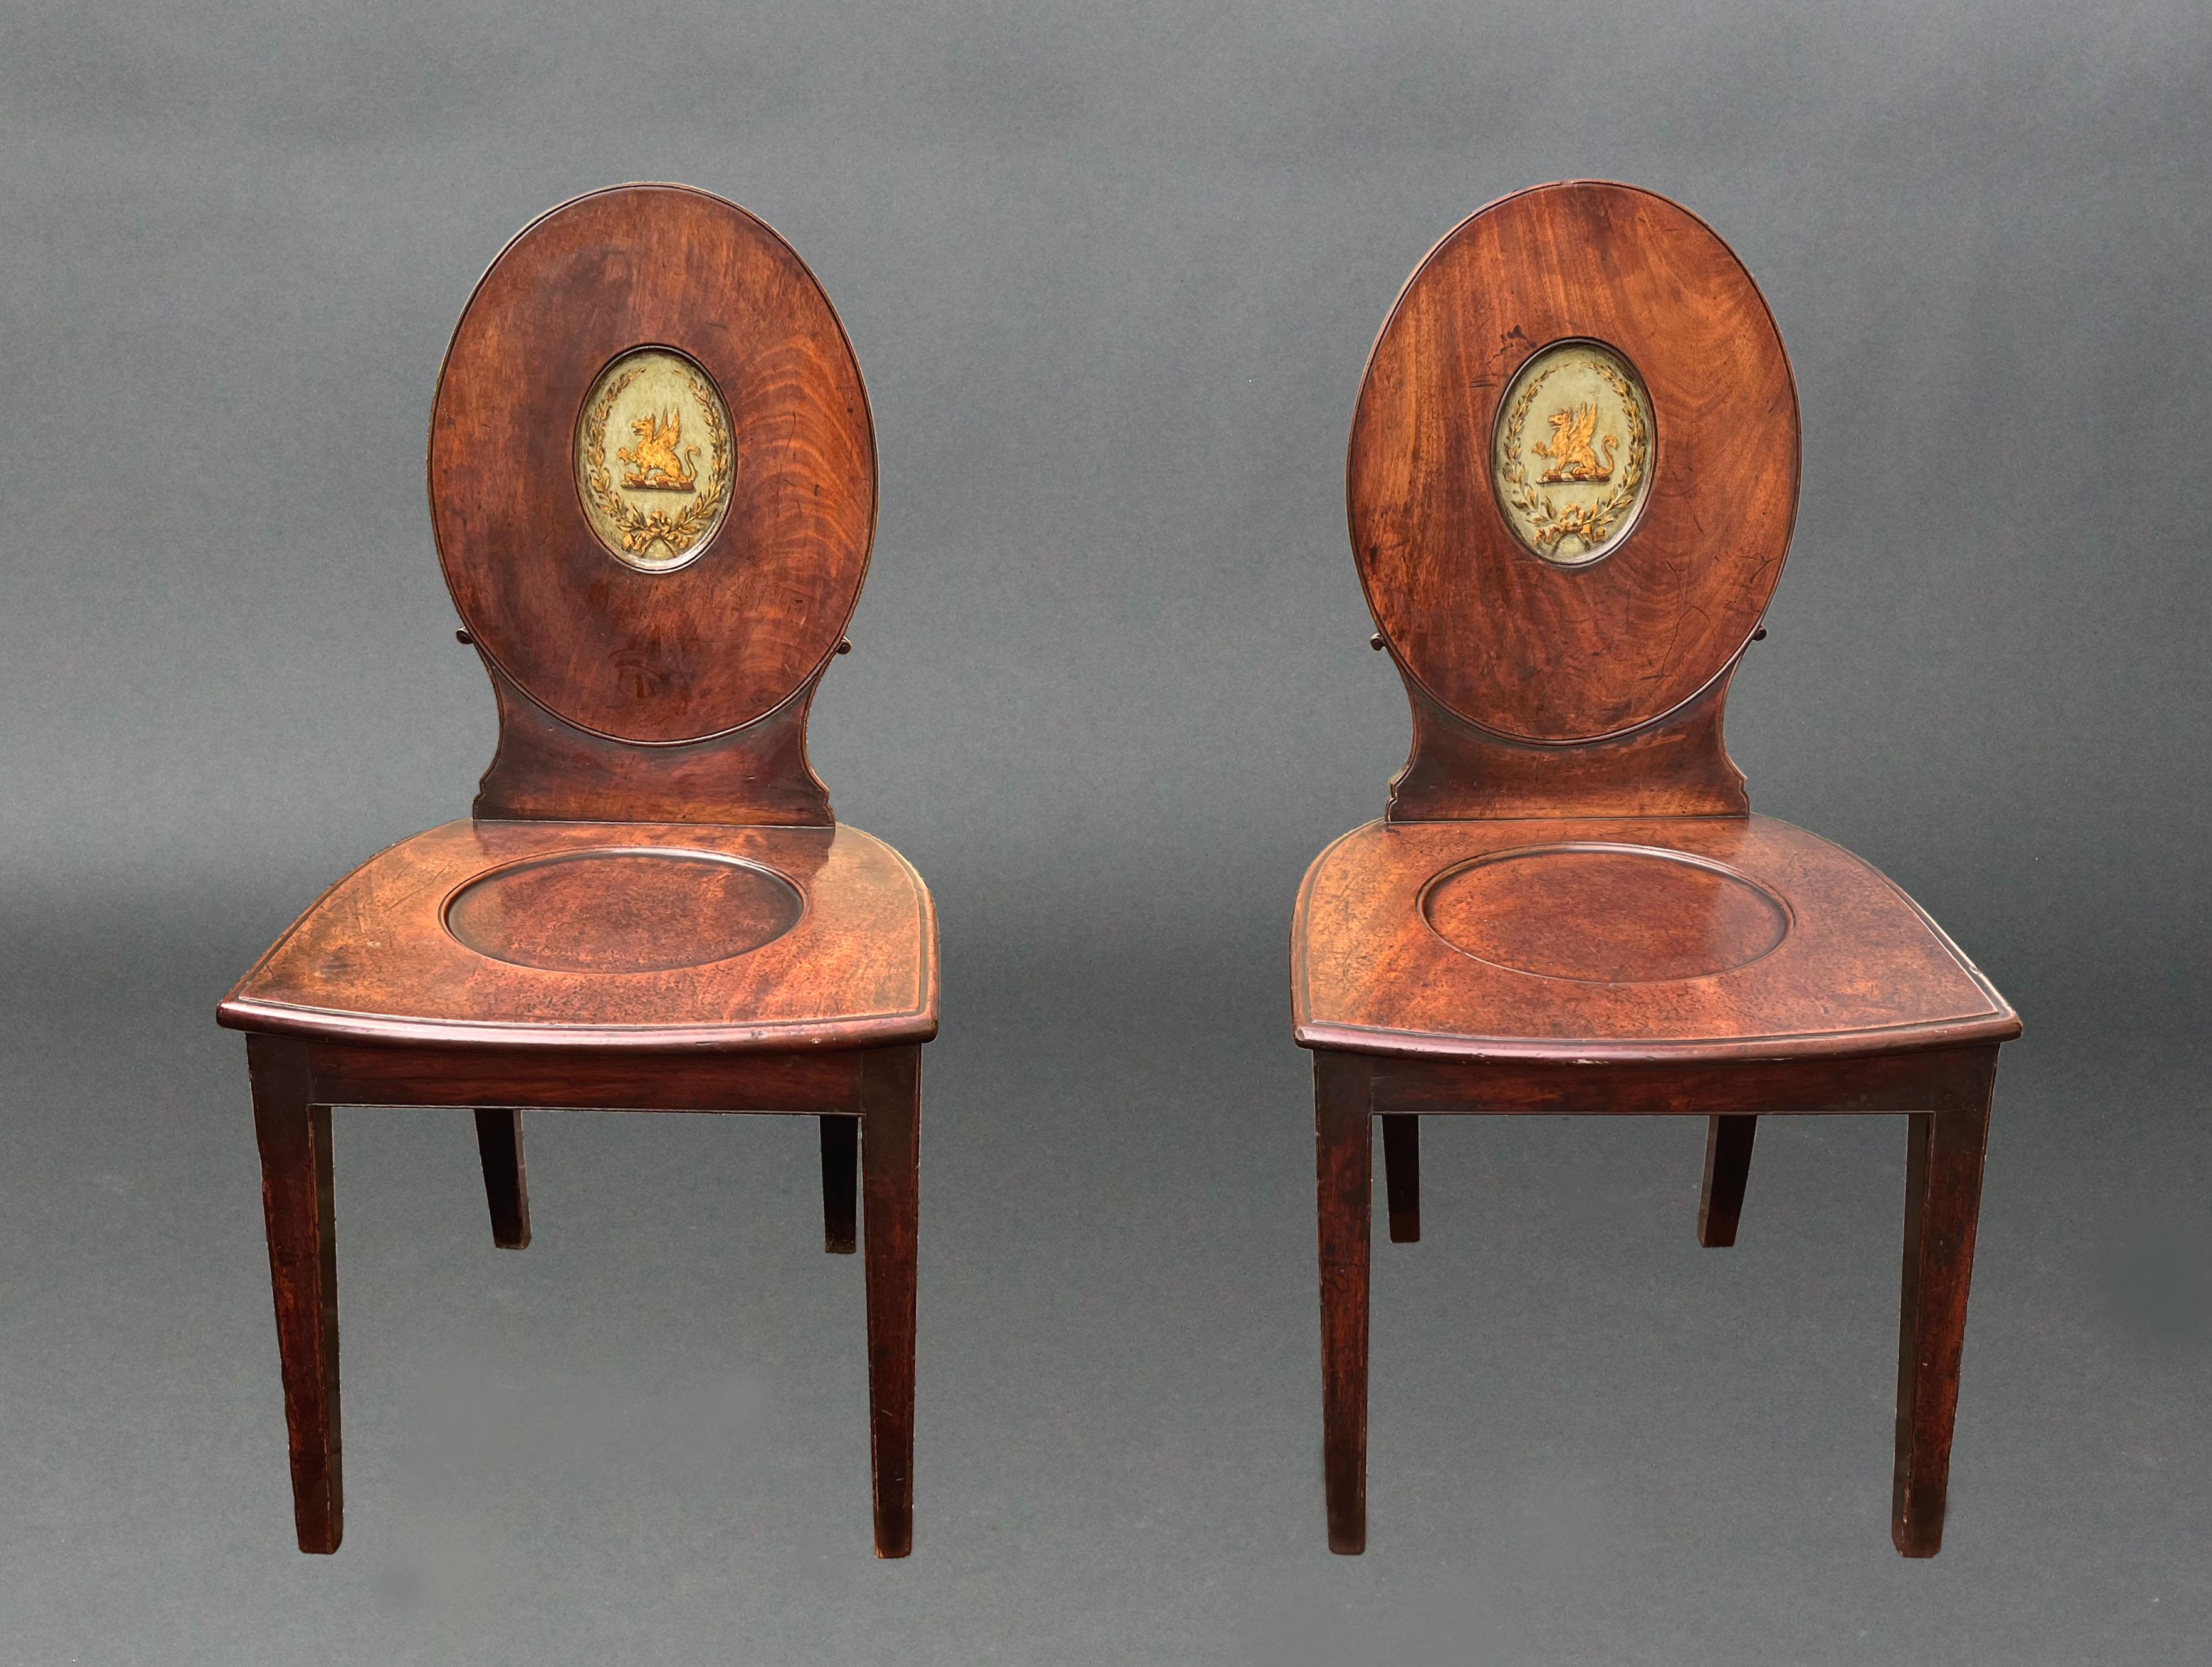 Ein Paar von George III Hepplewhite Periode Halle Stühle von einer guten ursprünglichen Farbe und Patina; die ovale Rückenlehnen mit Zentren fein mit vergoldeten Greifen und Lorbeerkränze auf einem blassgrünen Grund verziert. Die breite Bogenfront